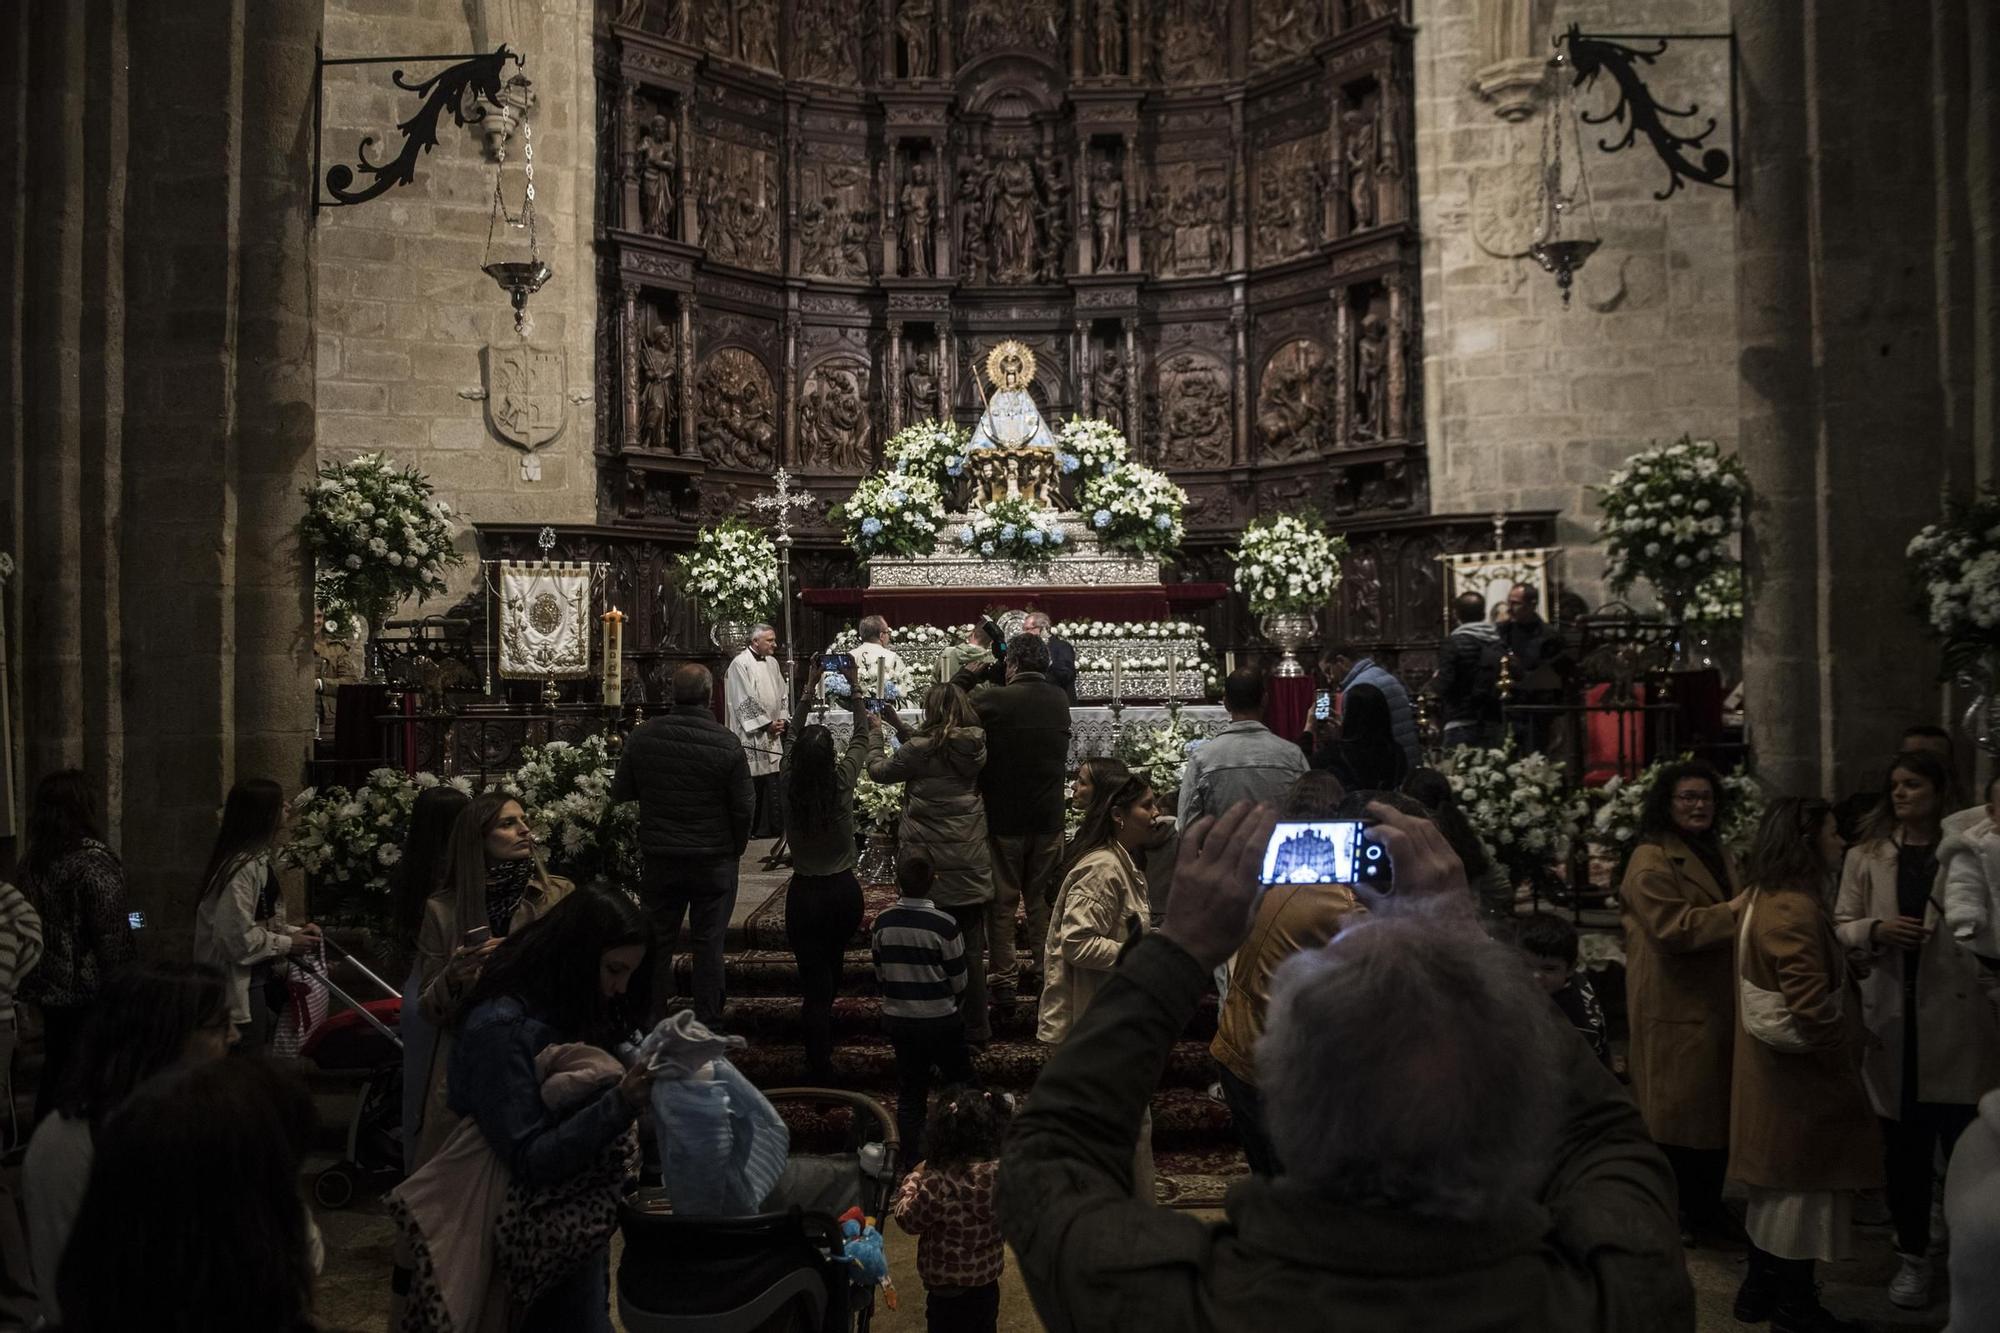 Imagen captada ayer en la concatedral de Santa María de Cáceres.